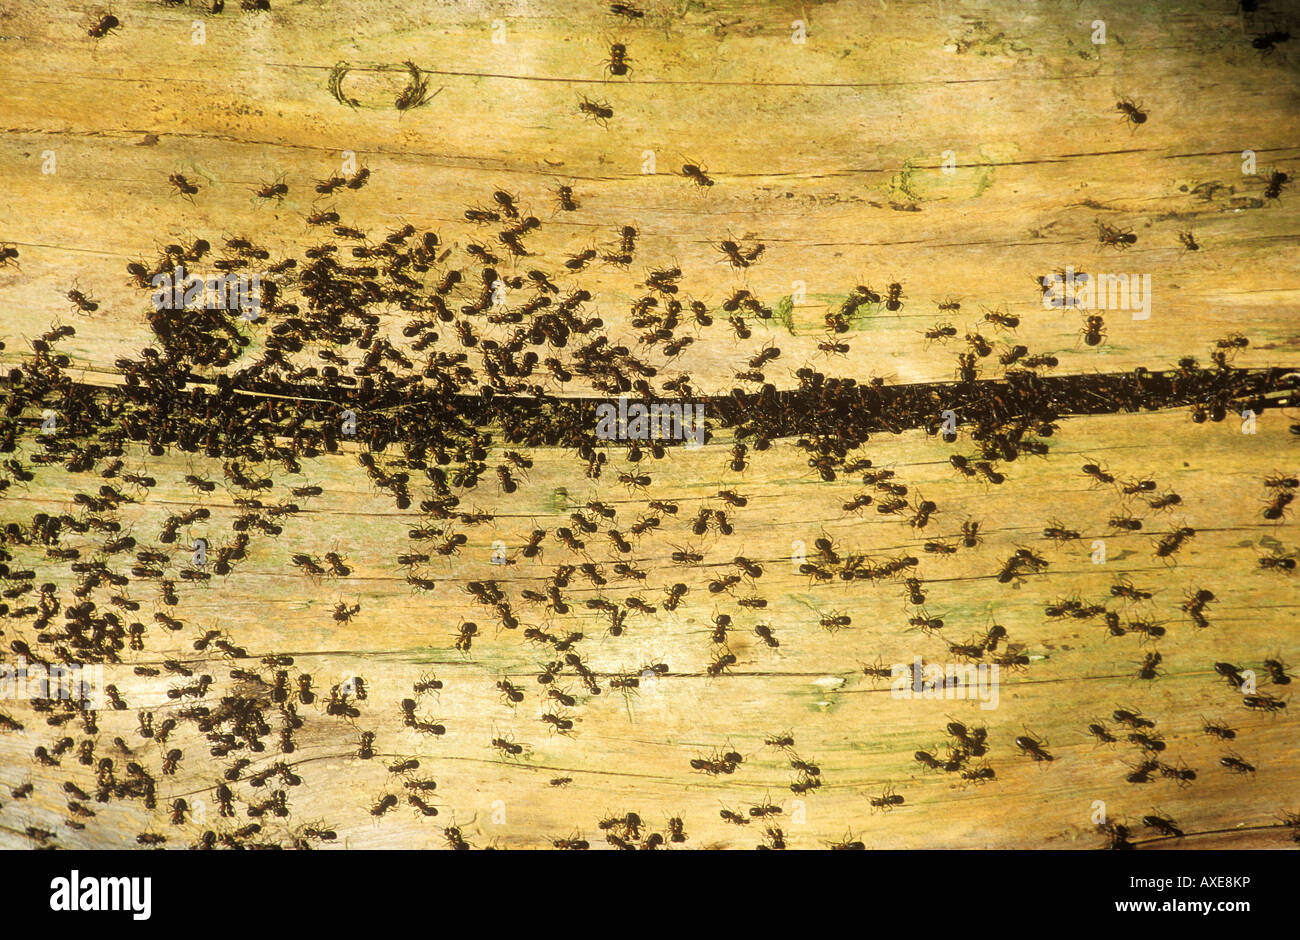 Legno Rosso ANT (Formica rufa). Un sacco di formiche su legno Foto Stock